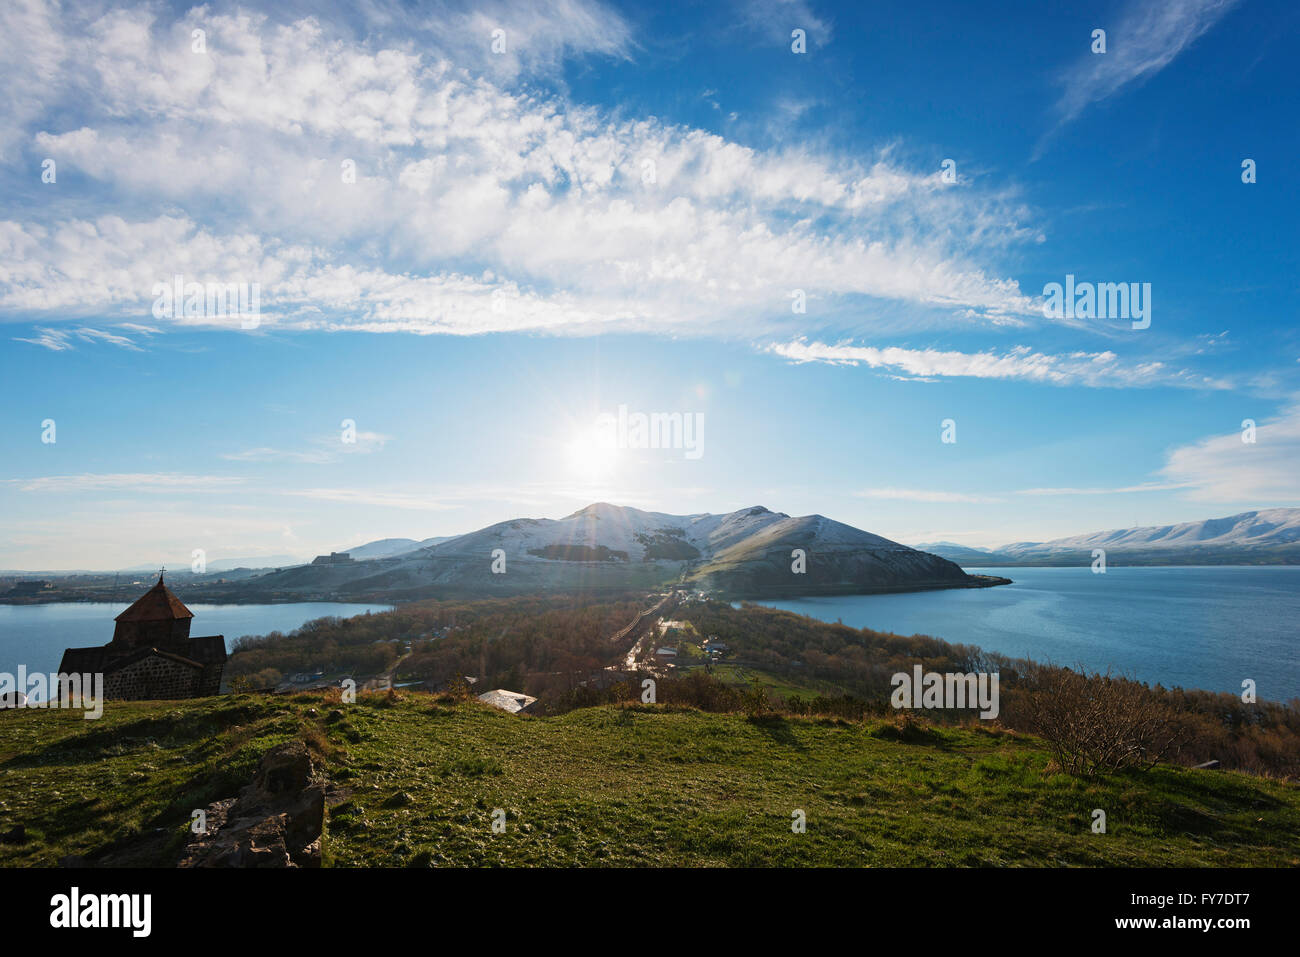 Eurasia, región del Cáucaso, Armenia, Gegharkunik provincia, el lago Sevan, monasterio de Sevanavank Foto de stock